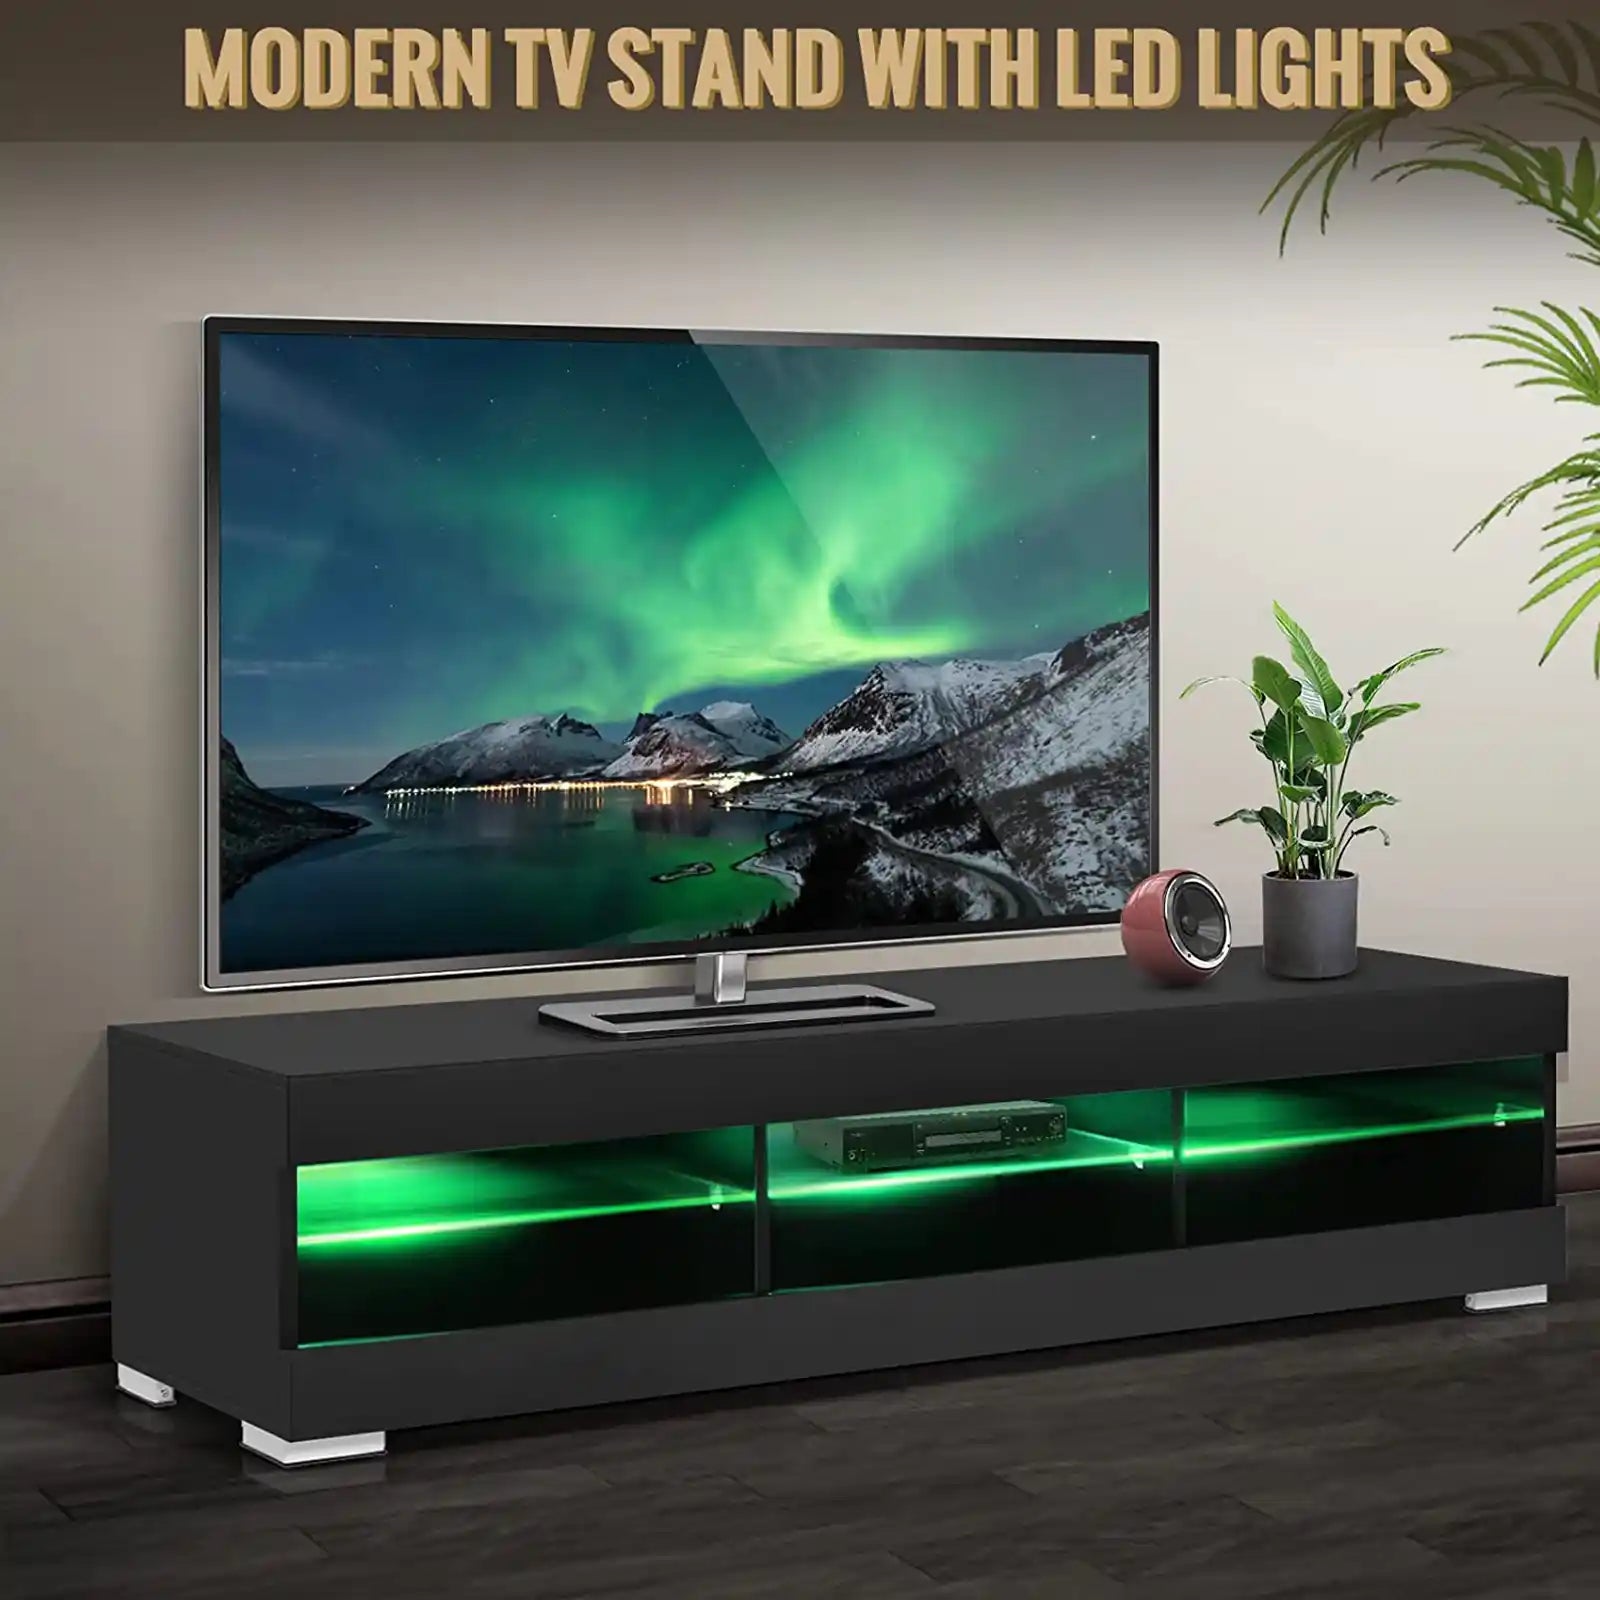 Soporte para TV LED con luces LED para TV de 65 pulgadas, centro de entretenimiento moderno con almacenamiento